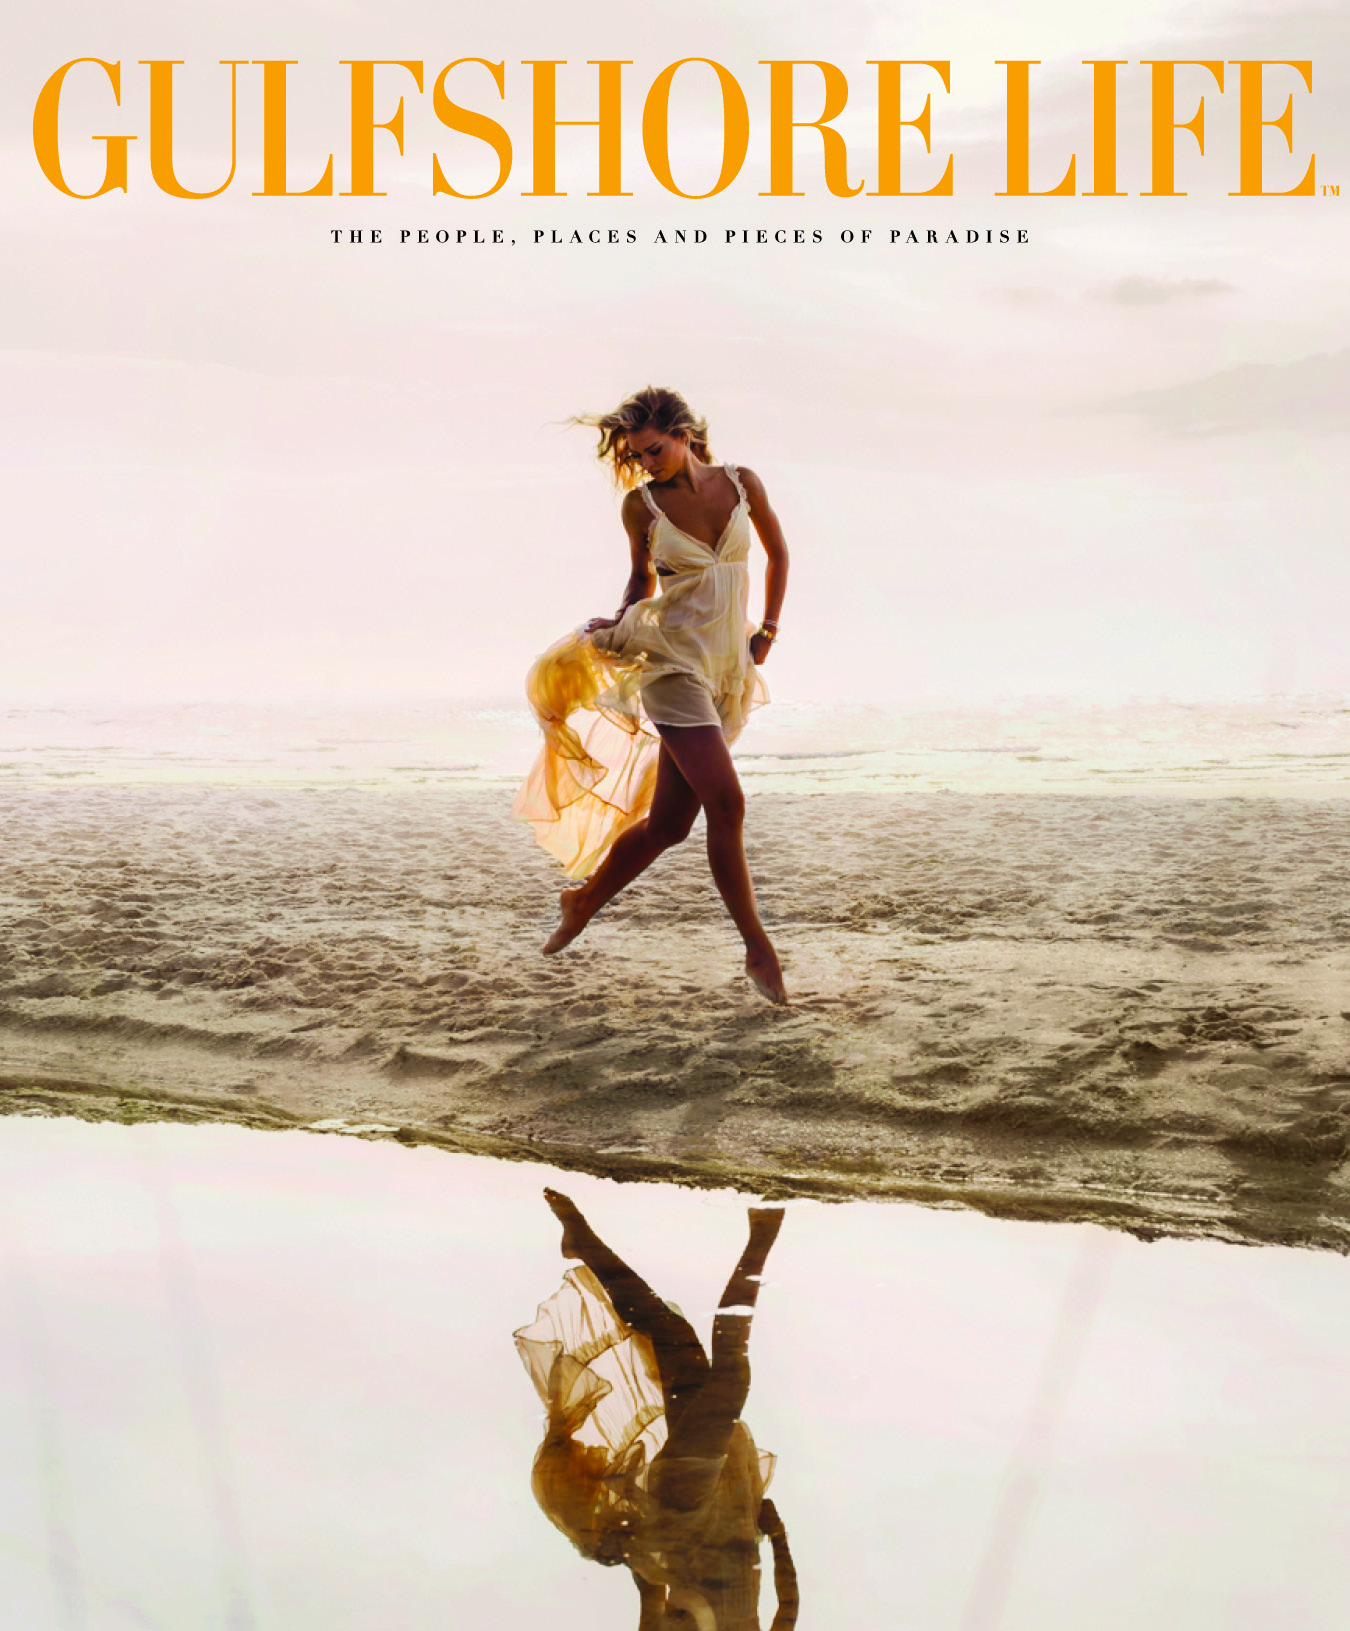 Gulfshore Life Magazine